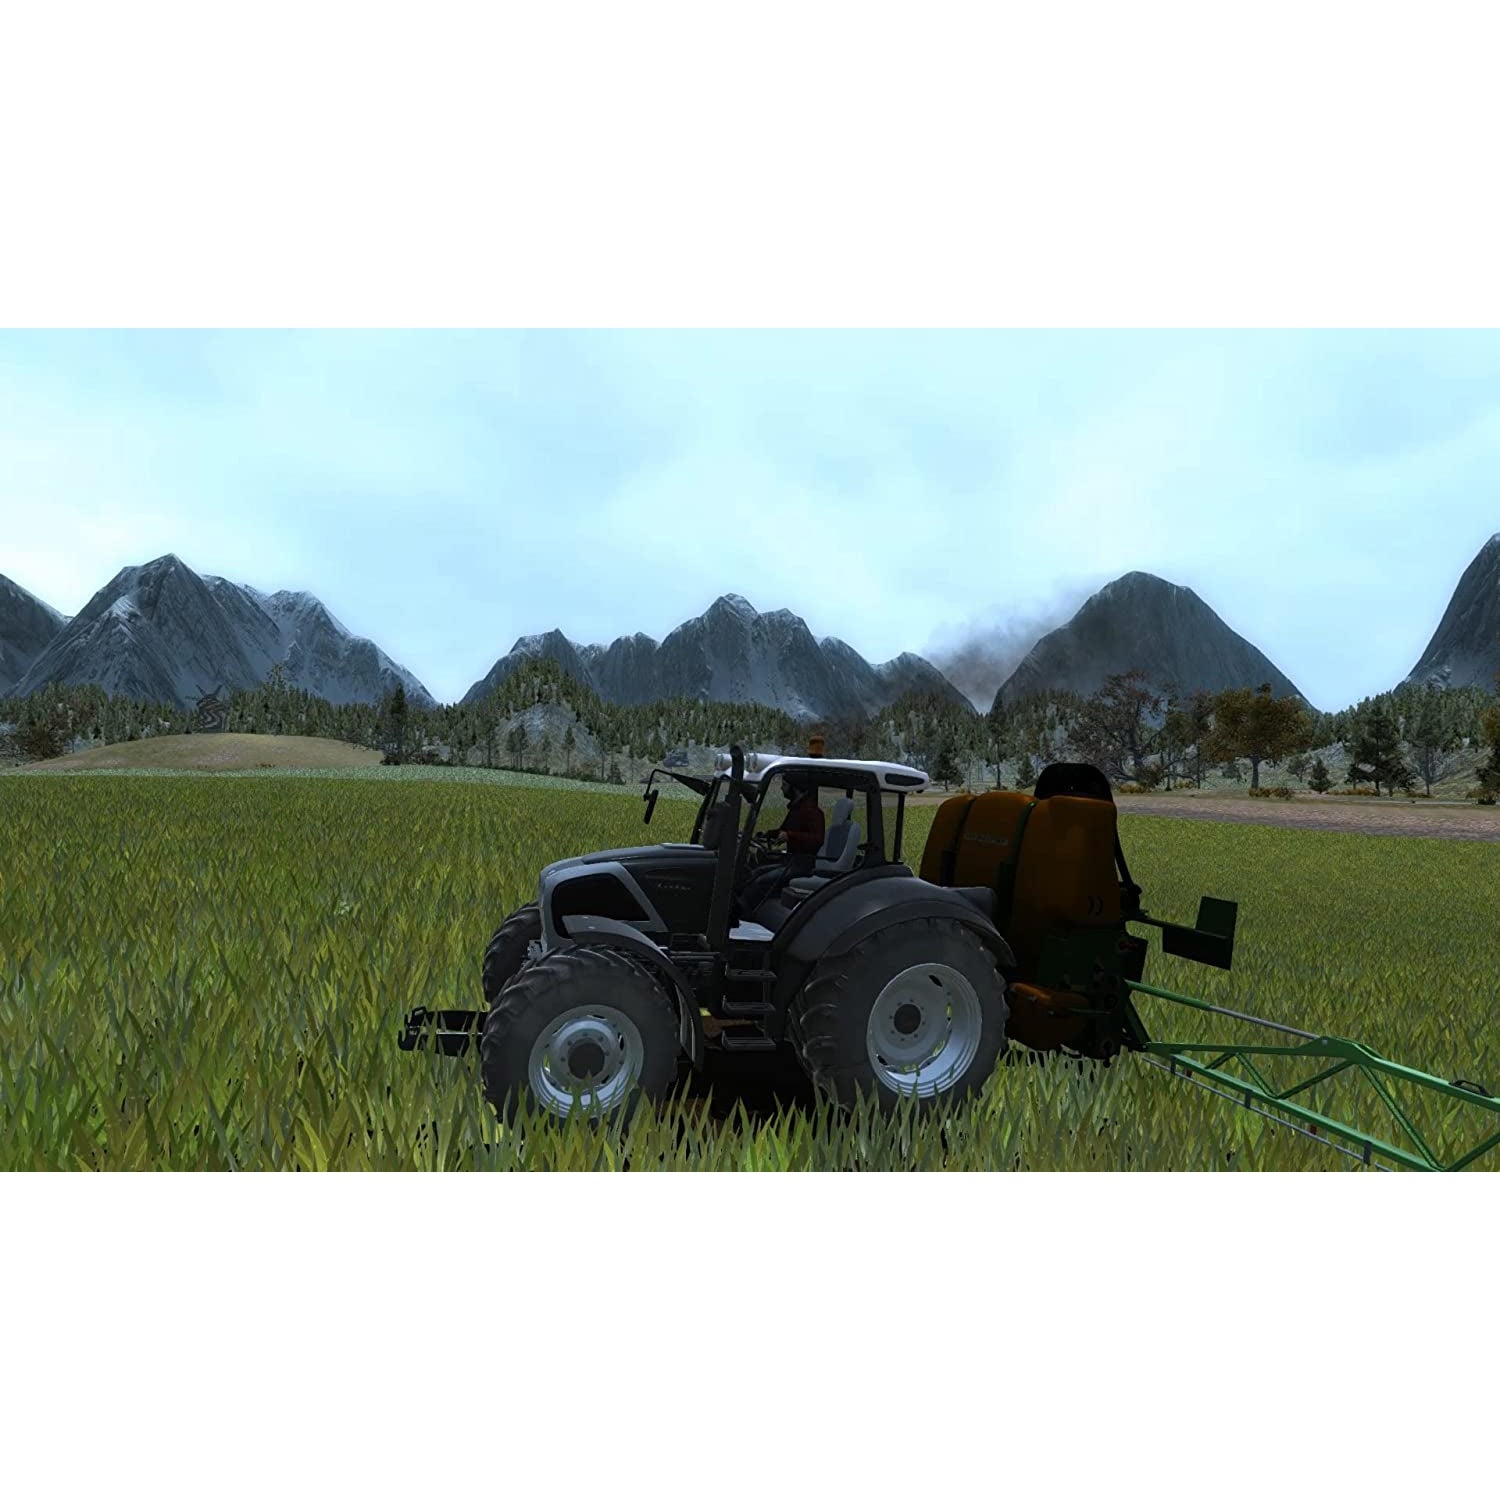 Professional Farmer 2017 (Xbox One)